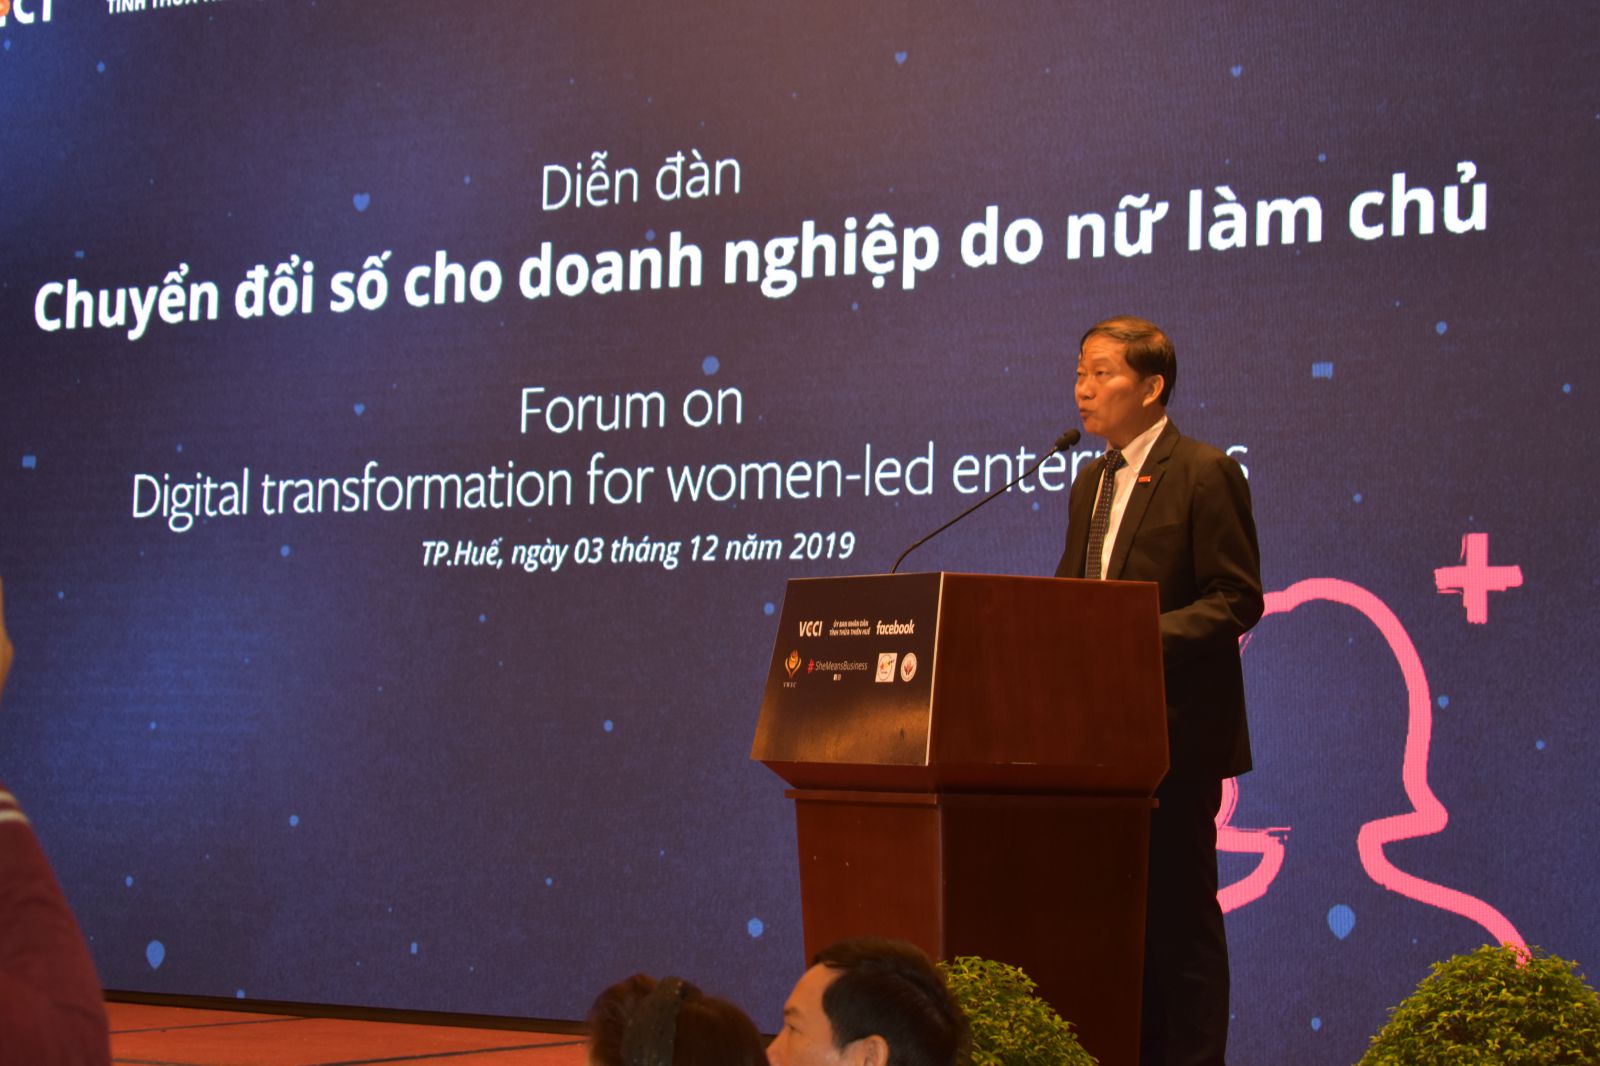 Ông Hoàng Quang Phòng, Phó chủ tịch VCCI nói về lợi ích của chuyển đổi số